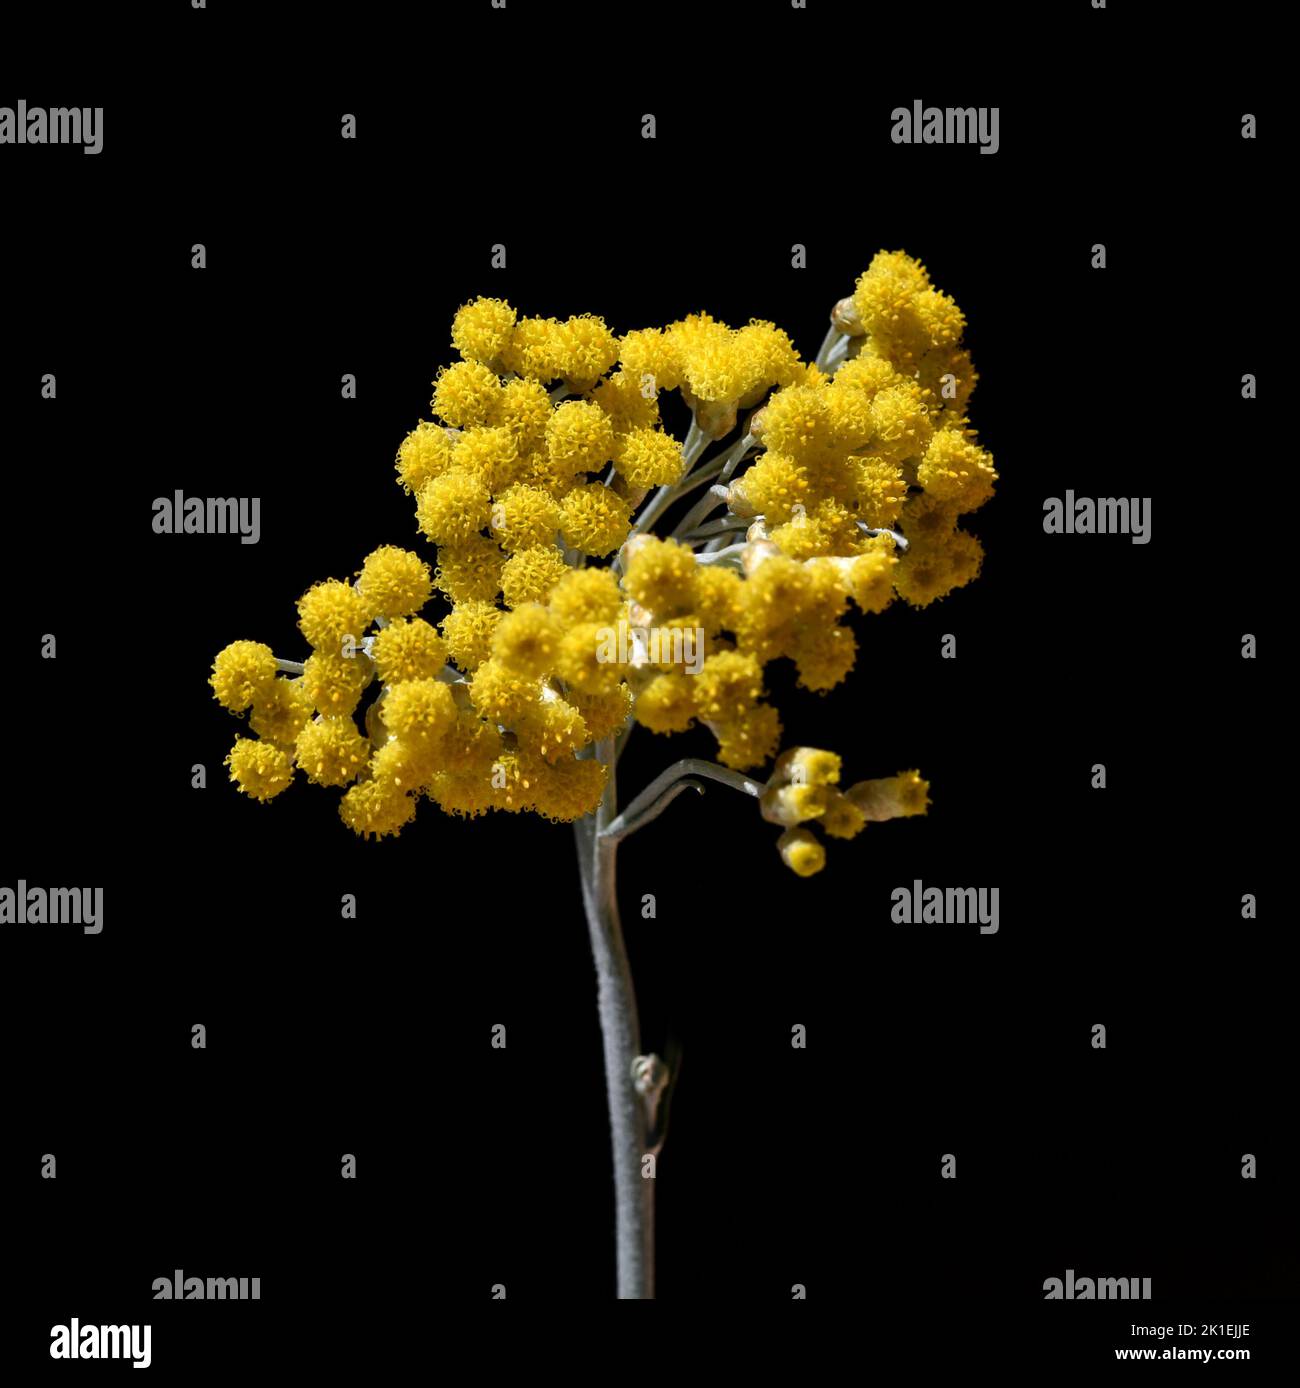 Das Kurvenkraut Helichrysum italicum ist eine wichtige Heilpflanze und eine duftende Pflanze mit gelben Blüten, die auch als Gewürz in der Küche verwendet wird. Stockfoto